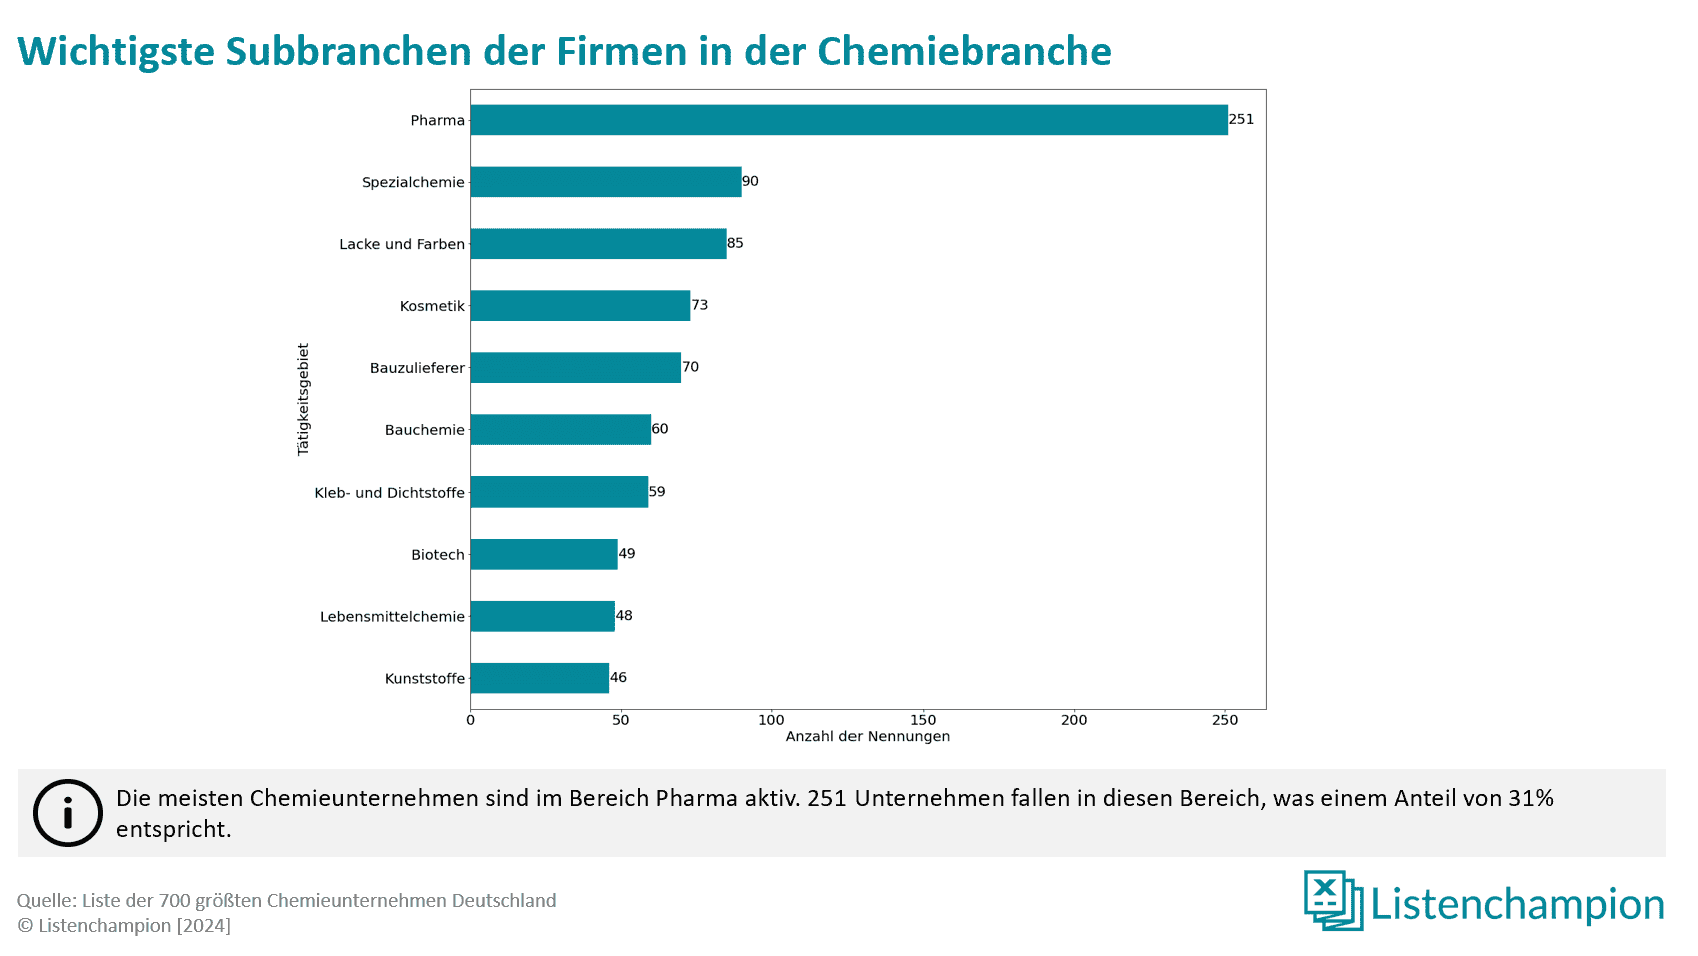 Subbranchen der größten deutschen Chemieunternehmen